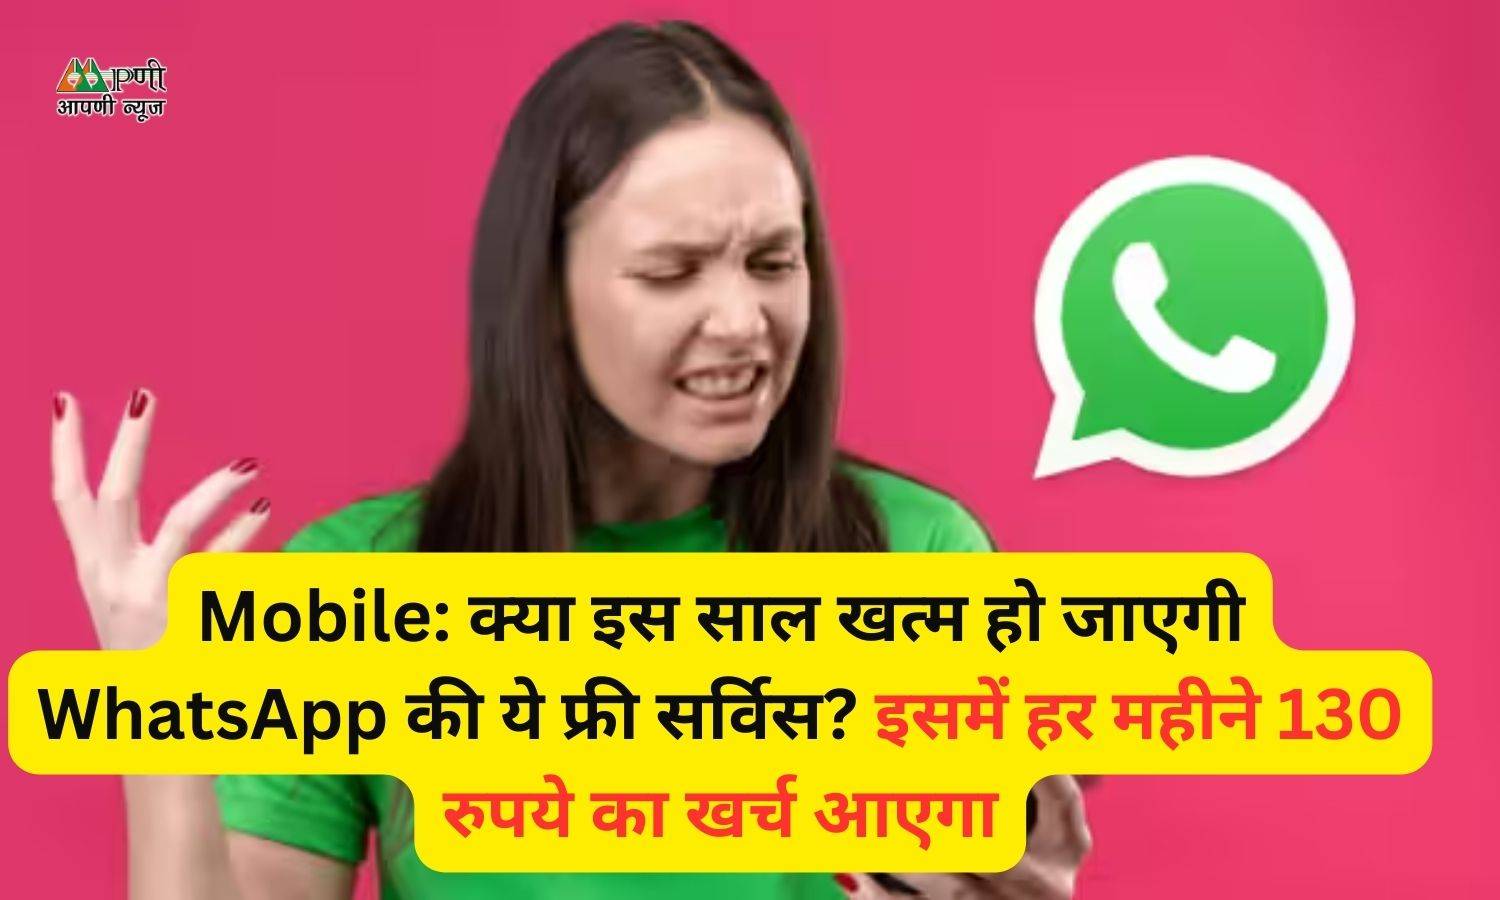 Mobile: क्या इस साल खत्म हो जाएगी WhatsApp की ये फ्री सर्विस? इसमें हर महीने 130 रुपये का खर्च आएगा